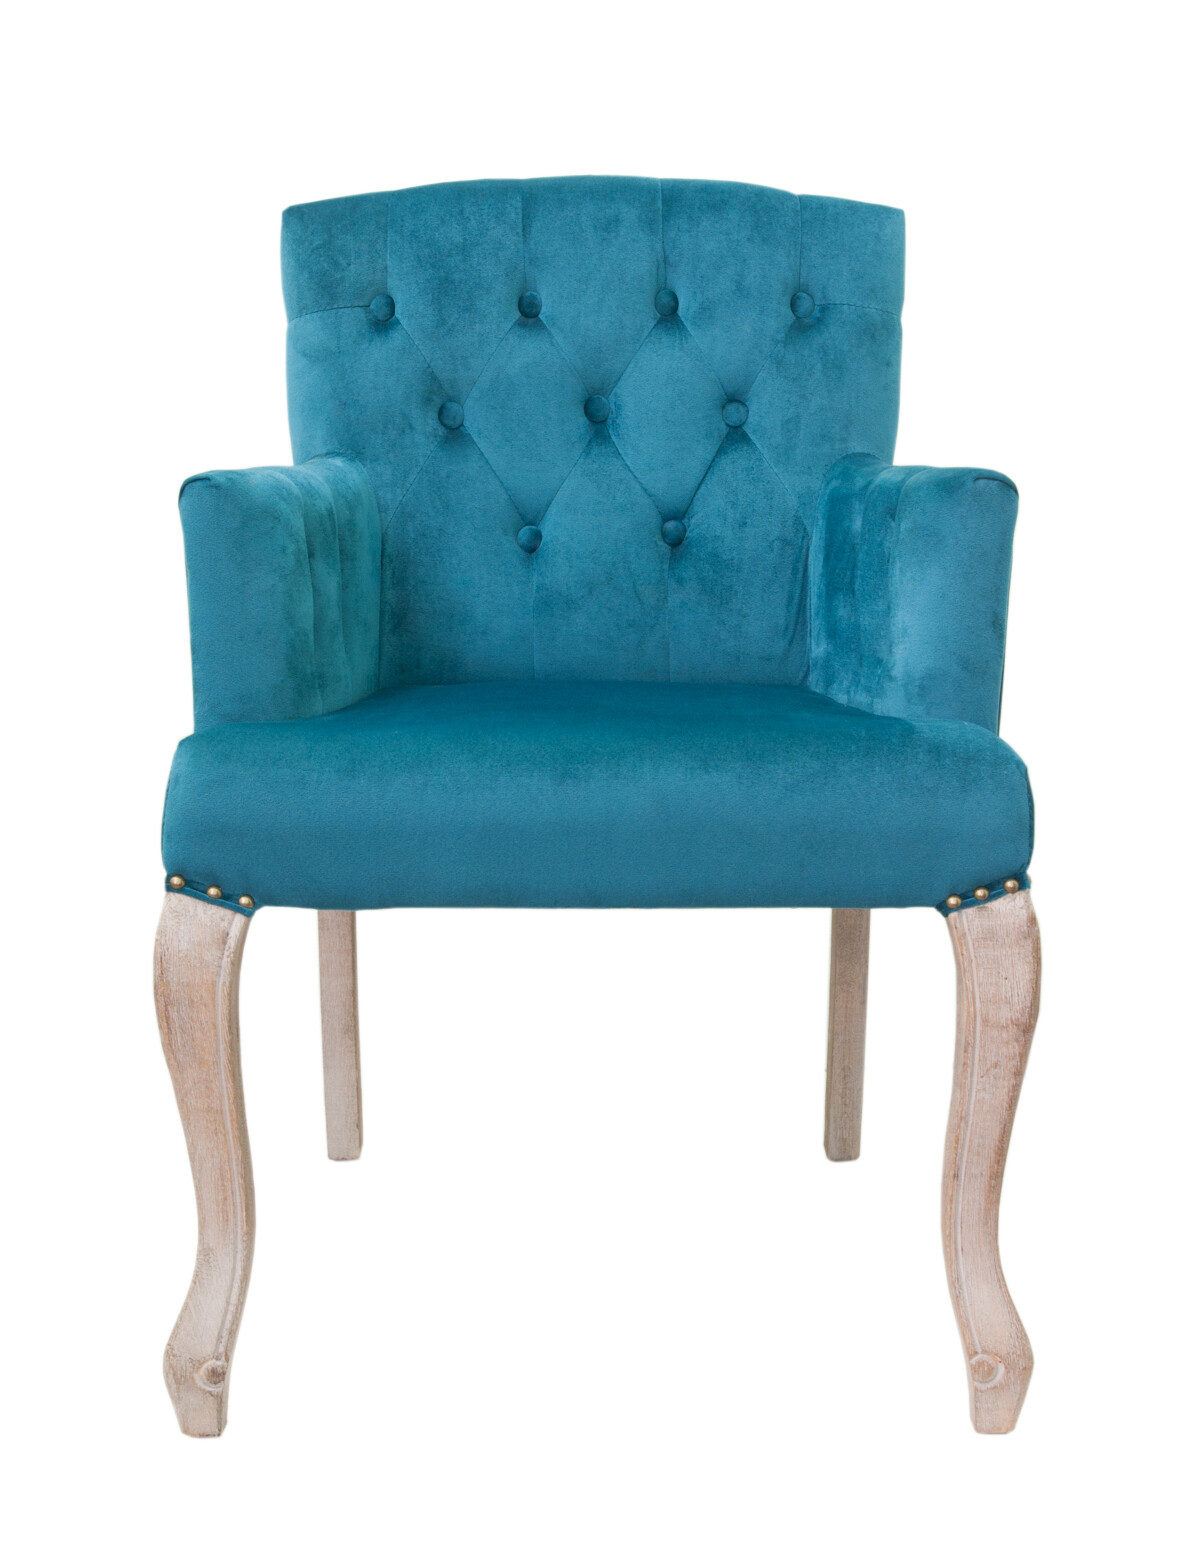 Кресло с мягкими подлокотниками голубое Deron от Mak-interior